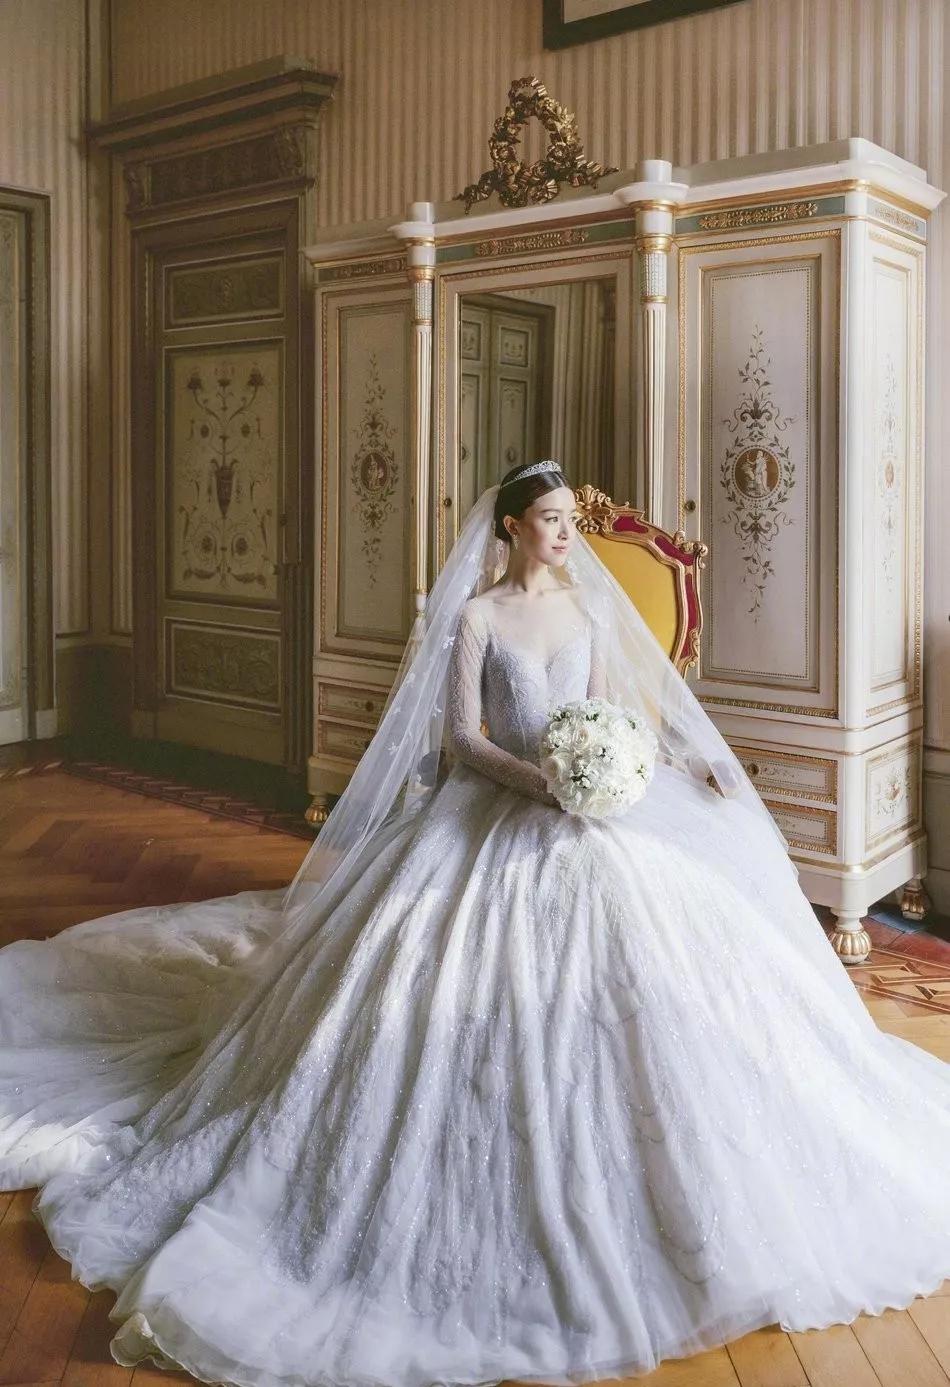 的镶钻montana蓝宝石冠冕 ,主婚纱澳洲品牌paolo sebastian,$65万